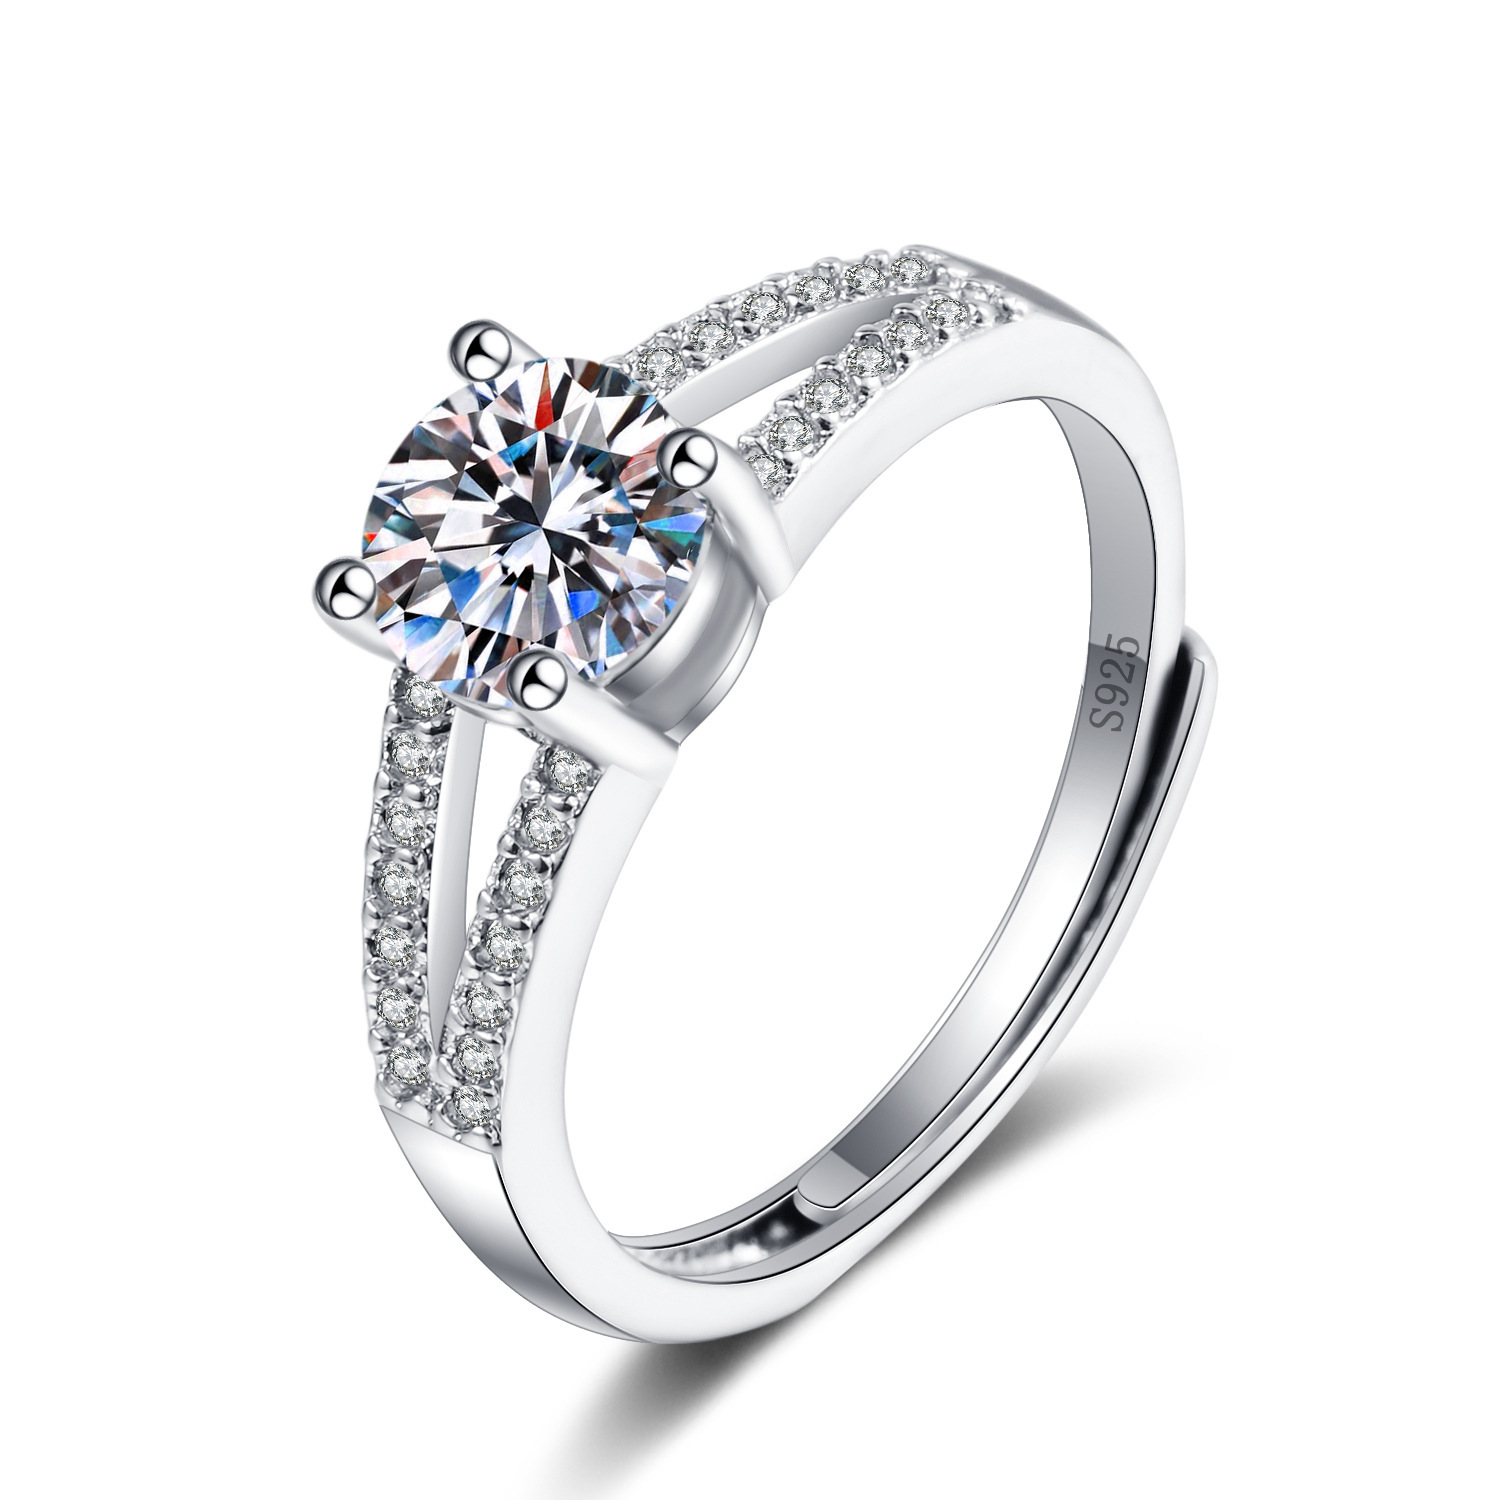 S925镀纯银硞石镶钻戒指韩版时尚女士简约甜美气质结婚订婚戒指